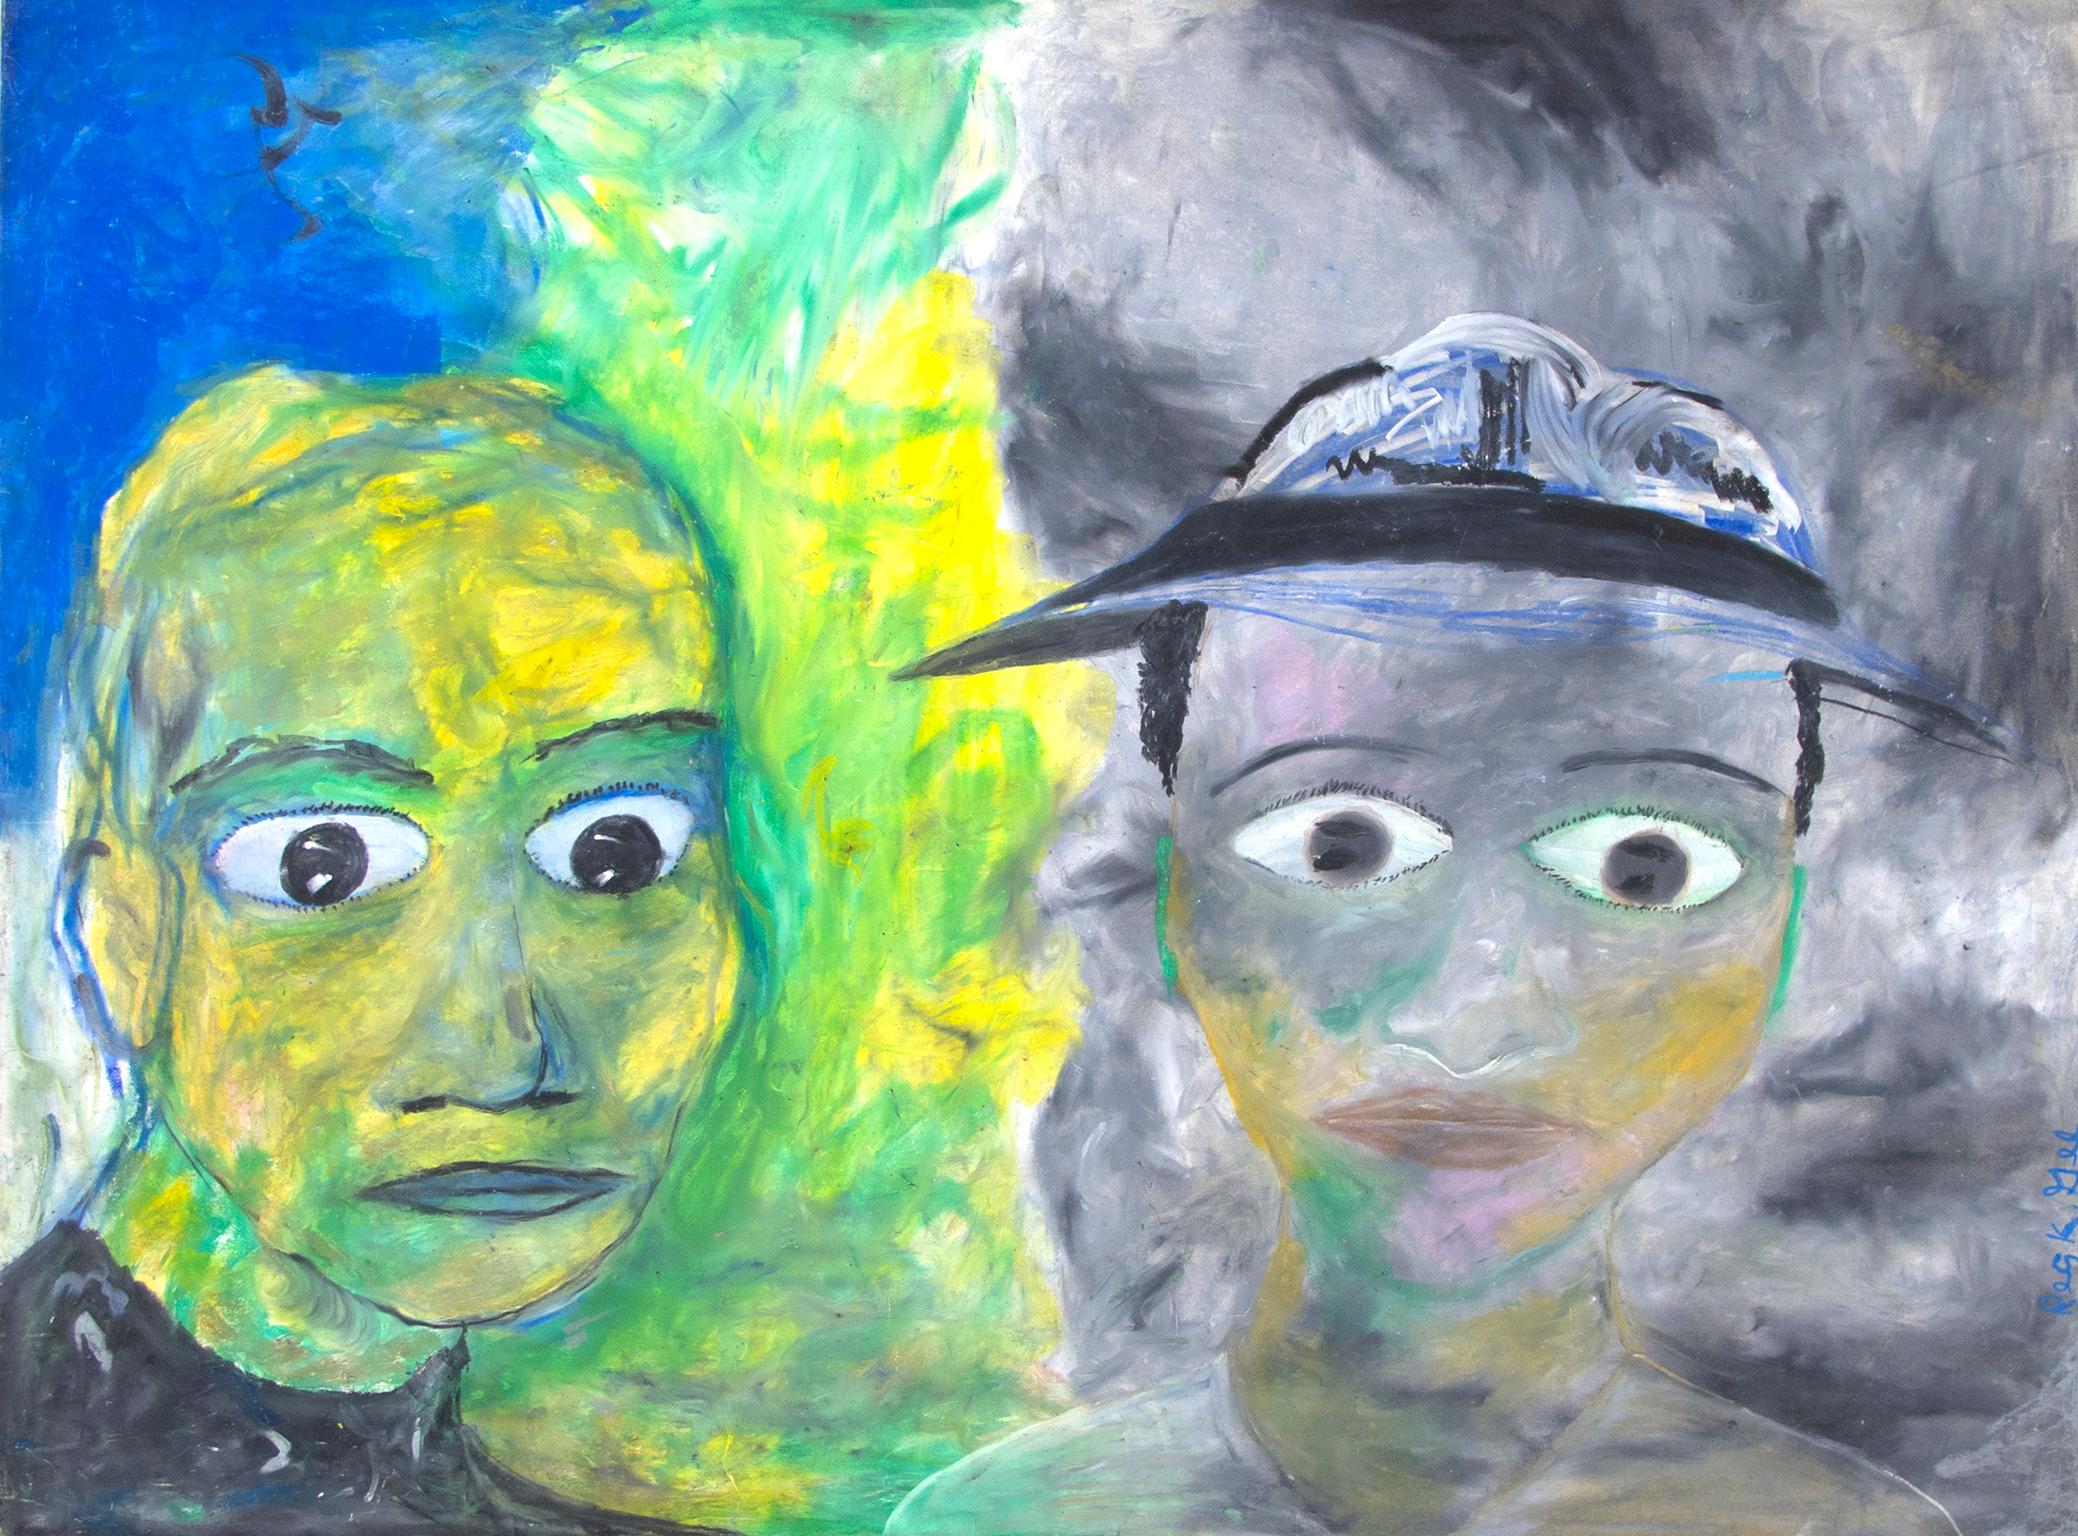 "The Mood" est un dessin original au pastel à l'huile sur carton d'illustration de Reginald K.K. Gee. L'artiste a signé l'œuvre en bas à droite. Cette pièce présente un double portrait : un homme en jaune et vert éclatants et un autre en gris. 

Art